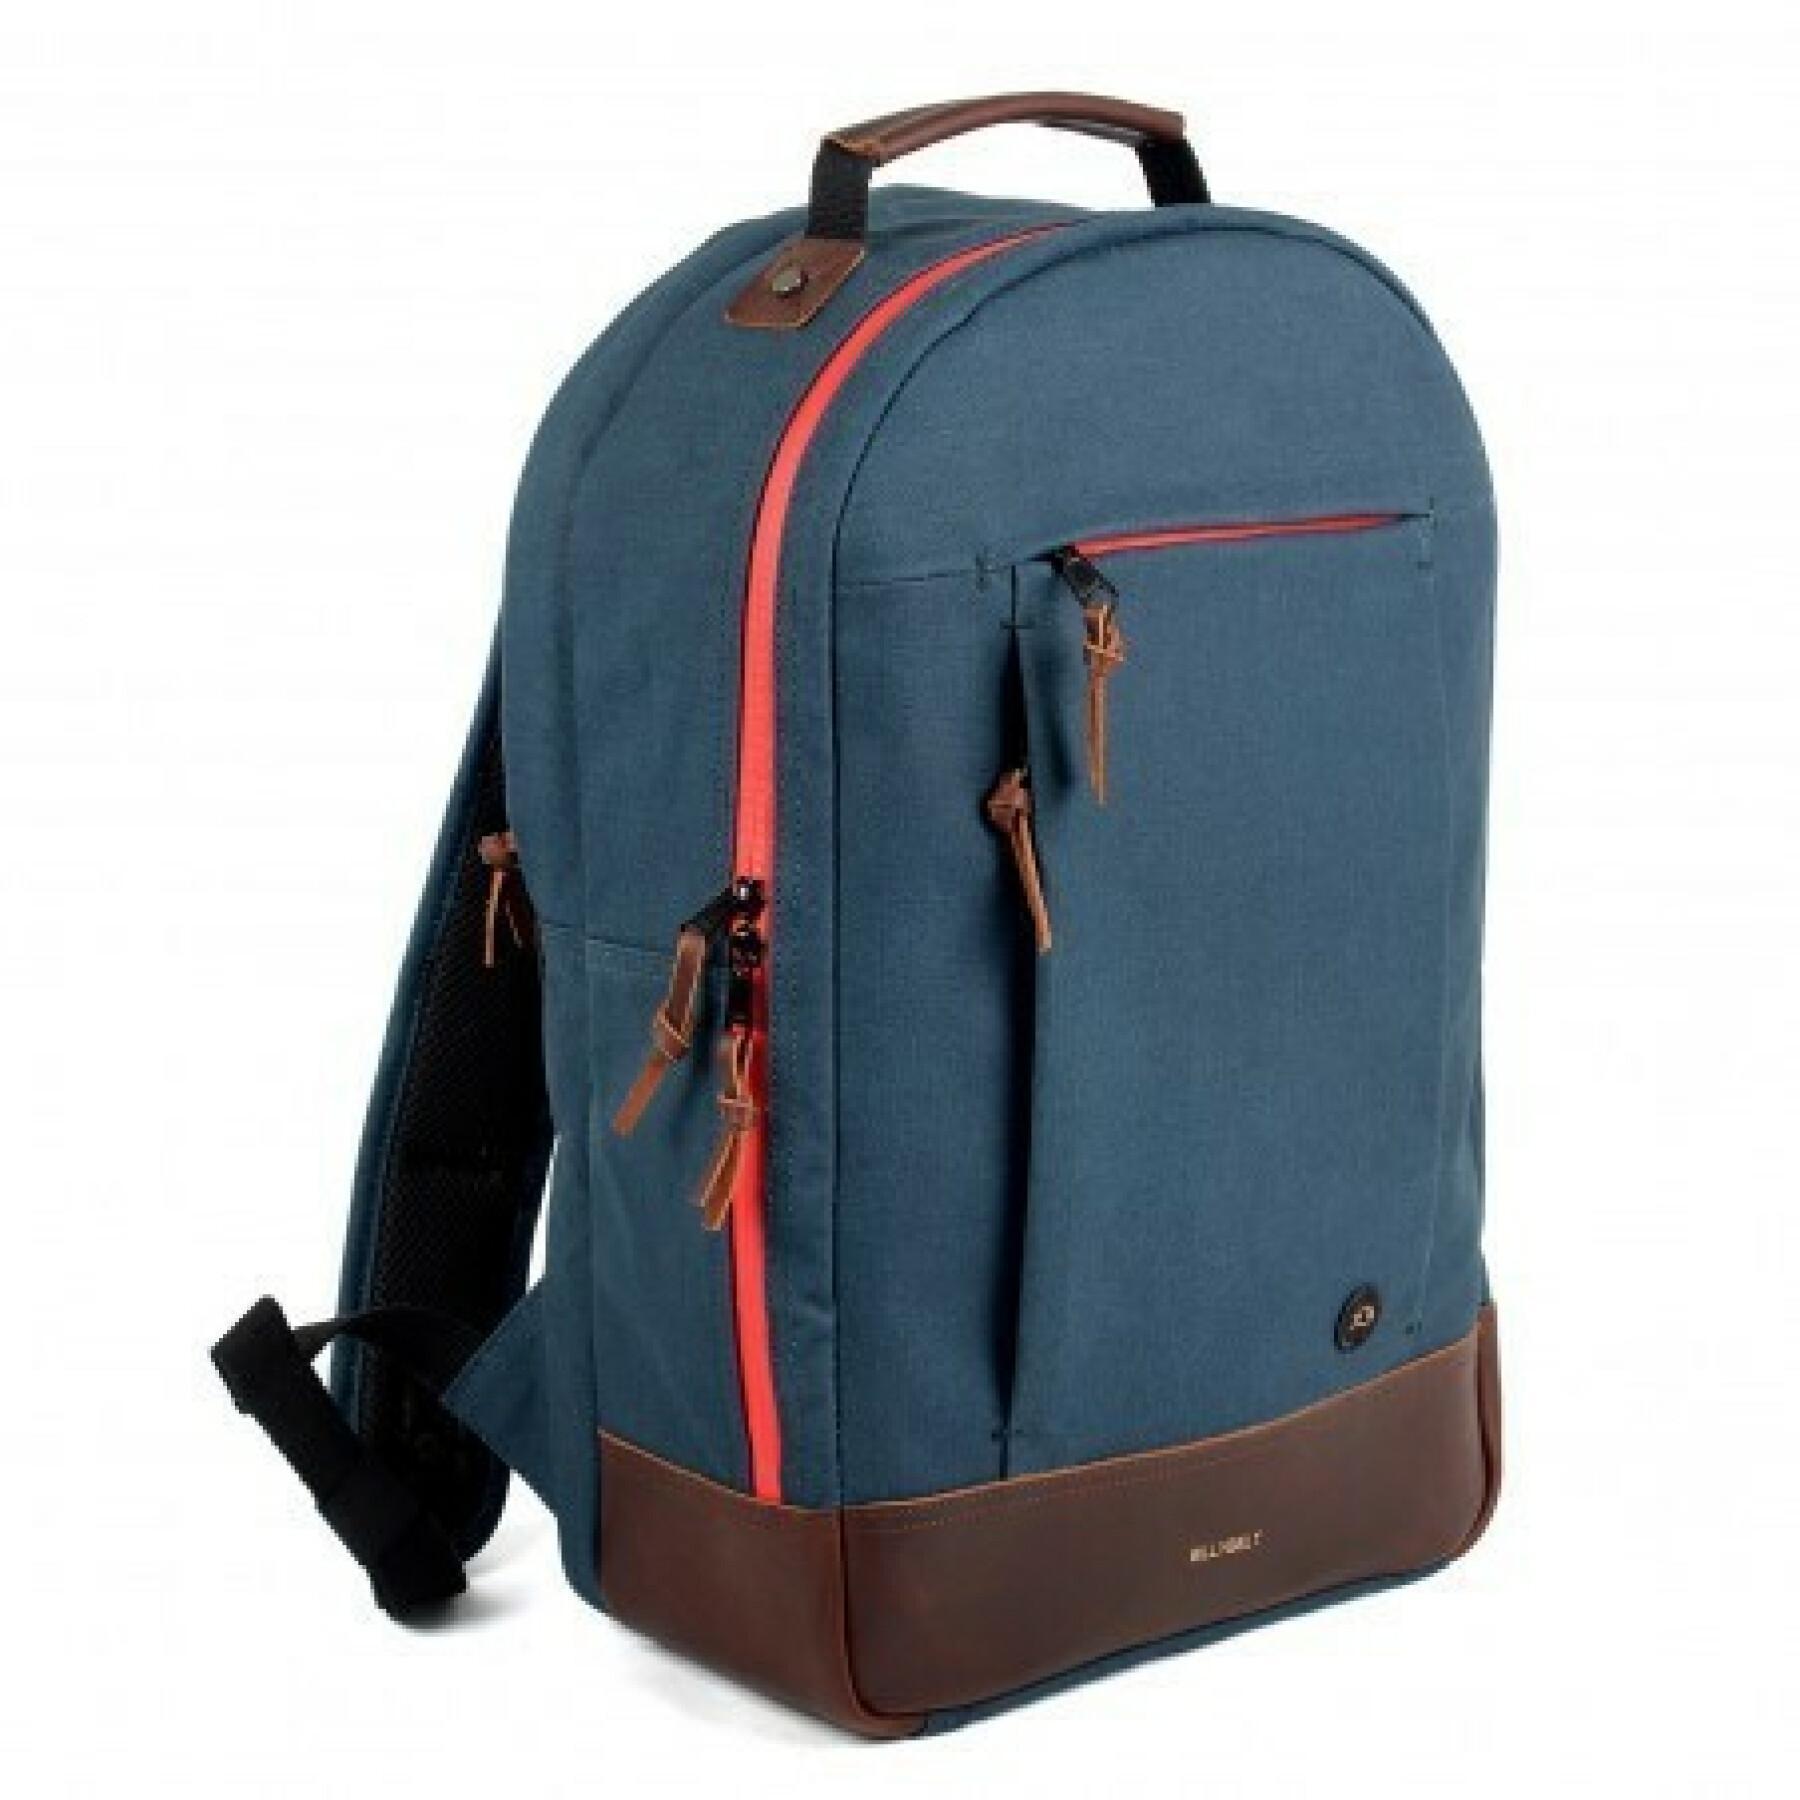 Canvas backpack Billybelt